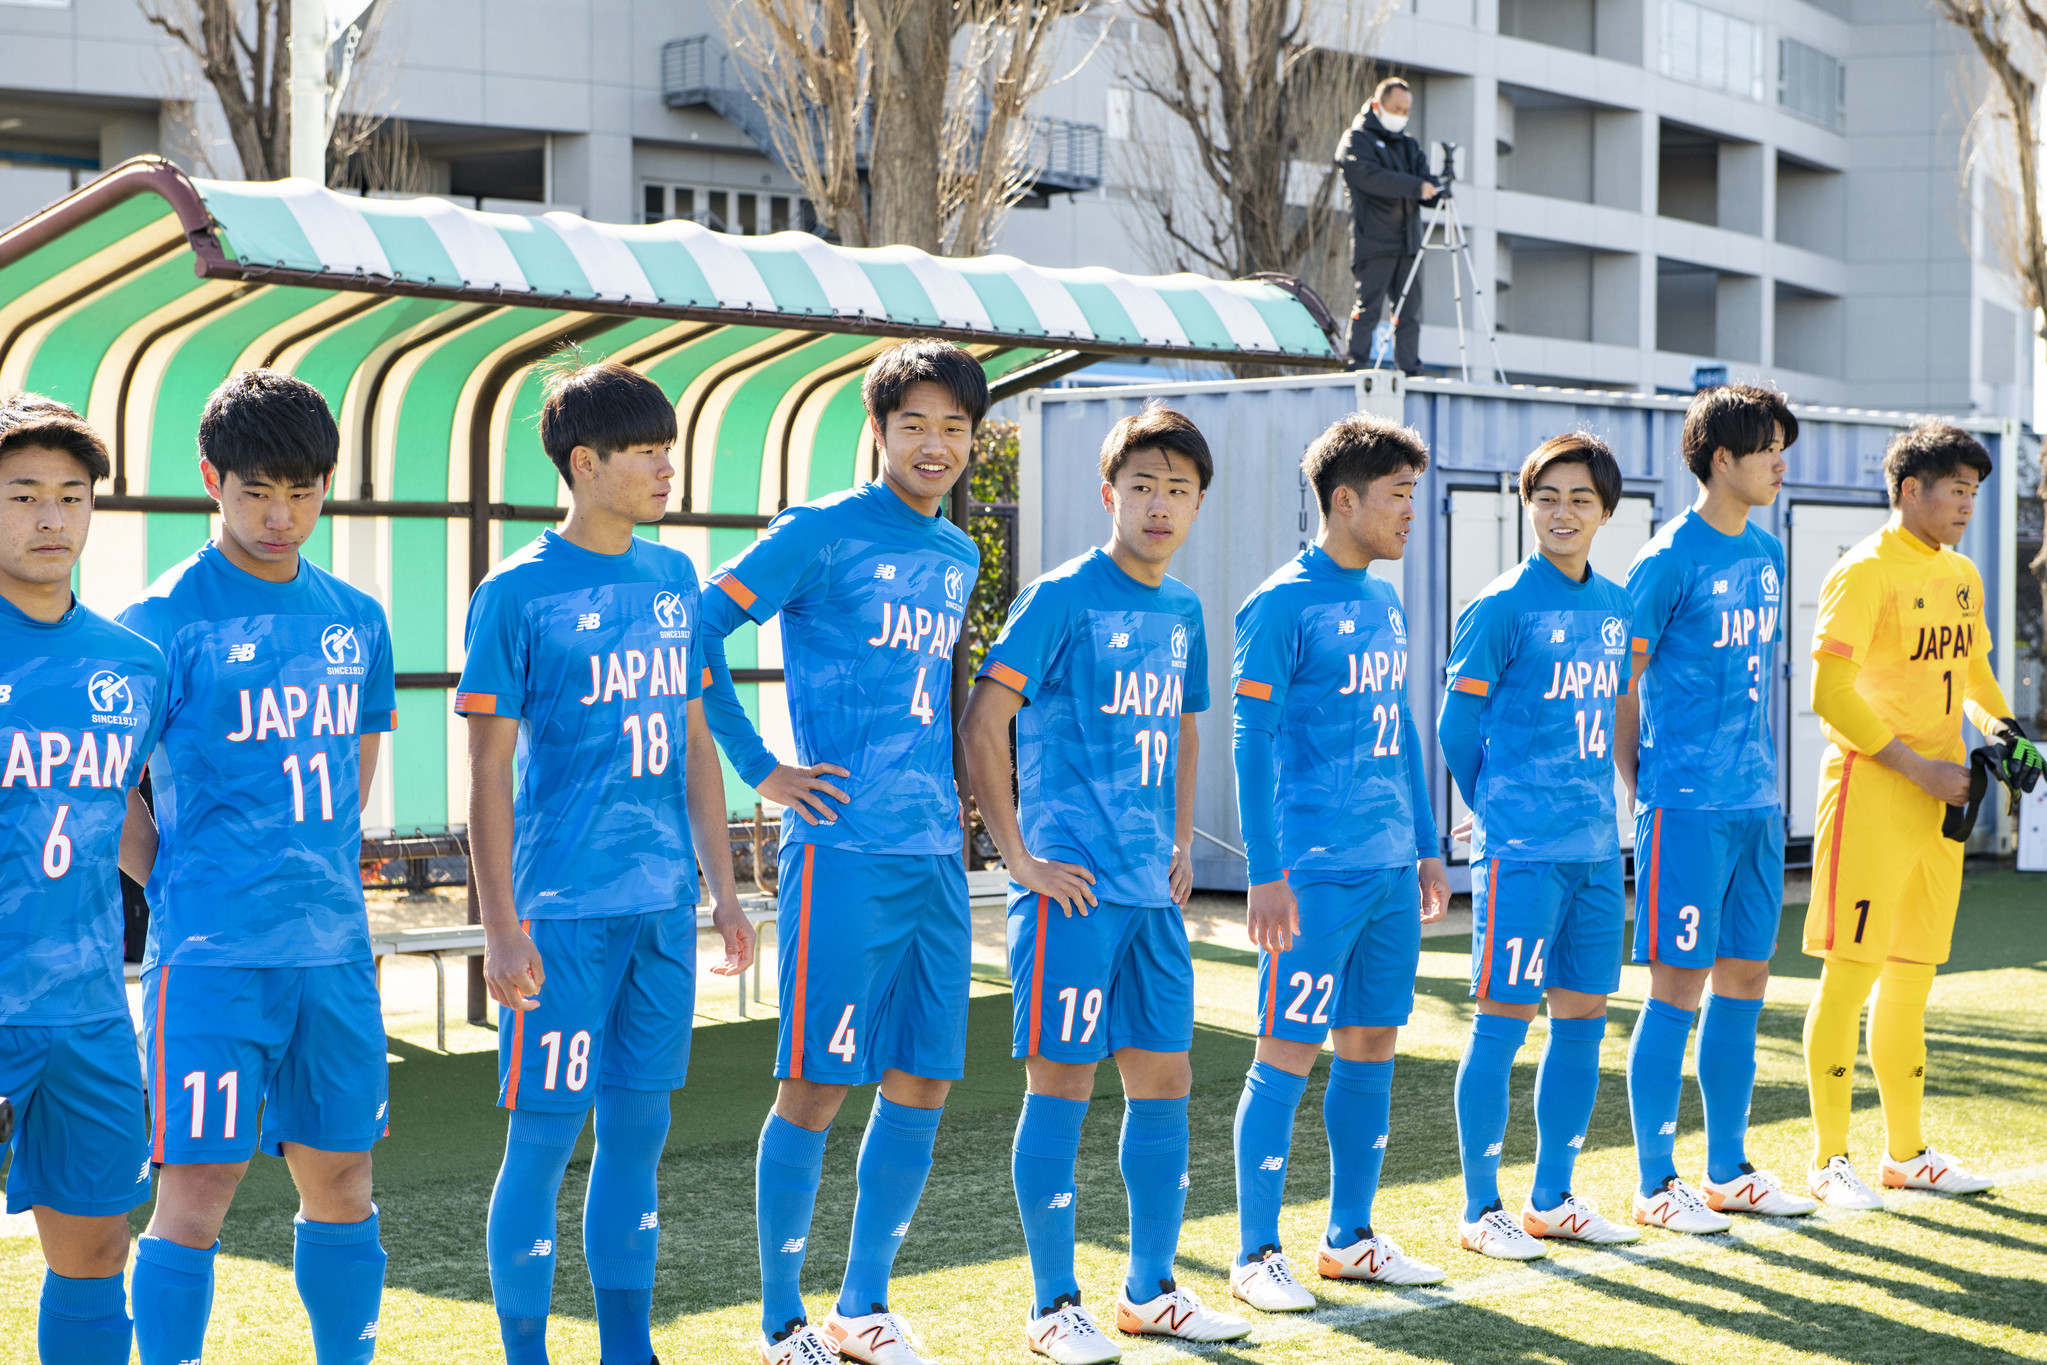 ニューバランスは21年度日本高校サッカー選抜へアパレル スパイクの提供を行います 株式会社ニューバランス ジャパンのプレスリリース